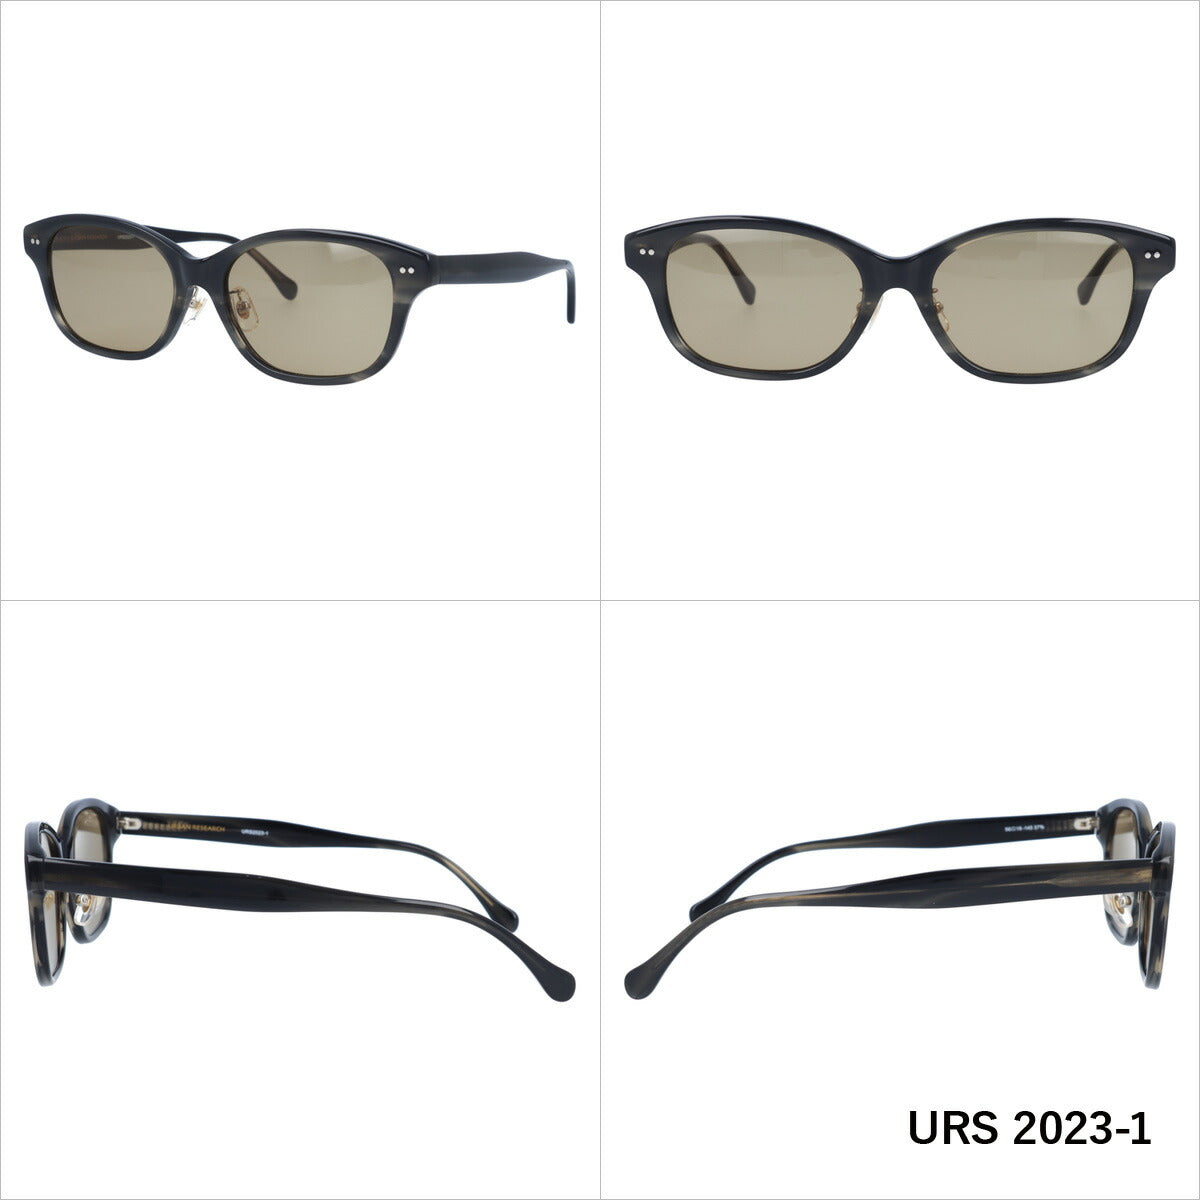 おしゃれ サングラス URBAN RESEARCH THE GIFT LABEL アーバンリサーチ ザ ギフトレーベル URS 2023 全3色 56サイズ アジアンフィット ウェリントン型 メンズ レディース UVカット 紫外線 対策 ブランド 眼鏡 メガネ アイウェア 人気 おすすめ